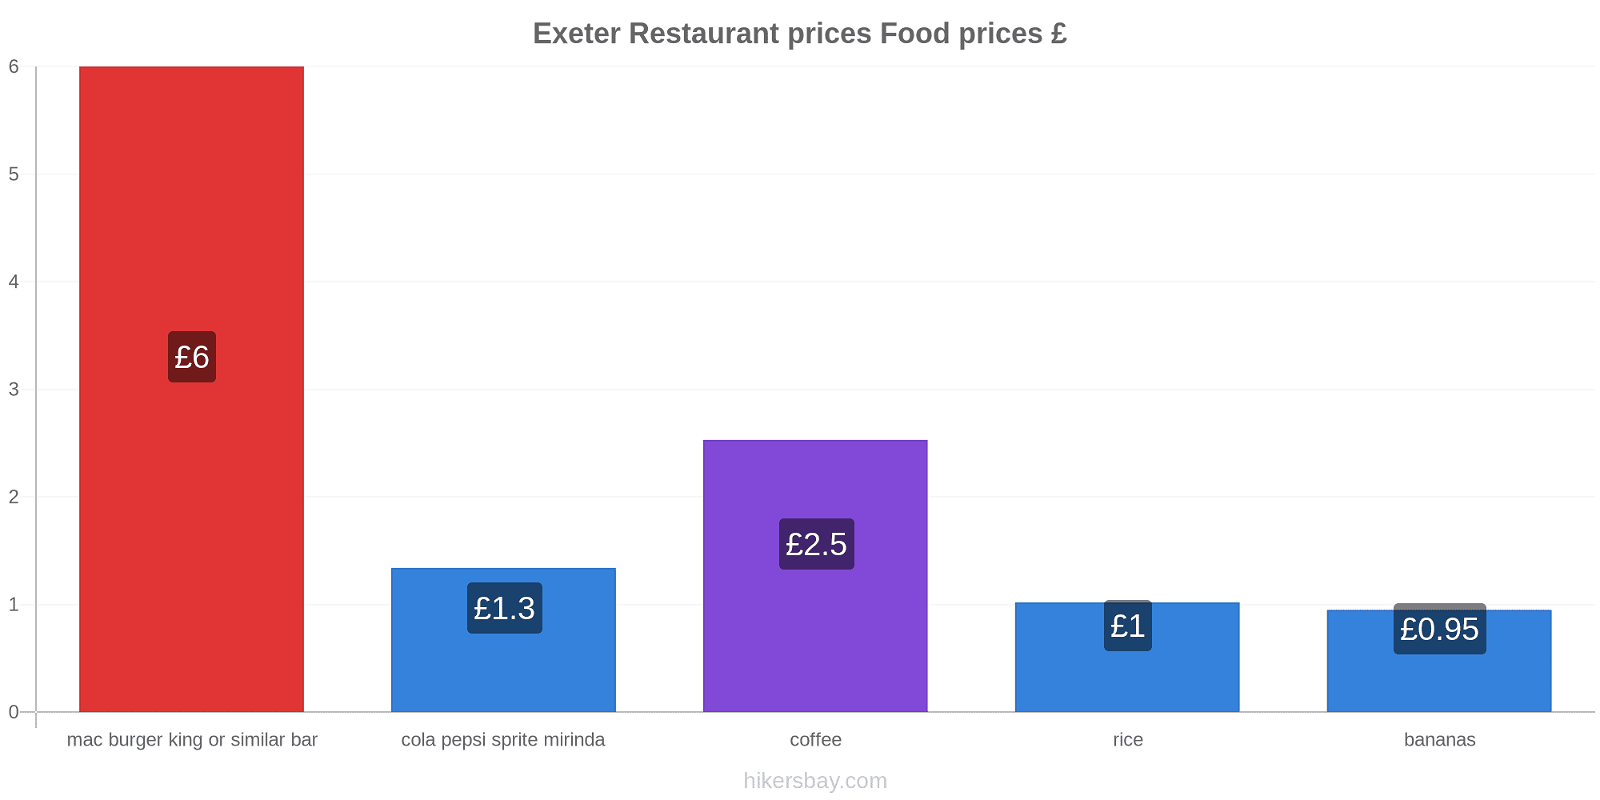 Exeter price changes hikersbay.com